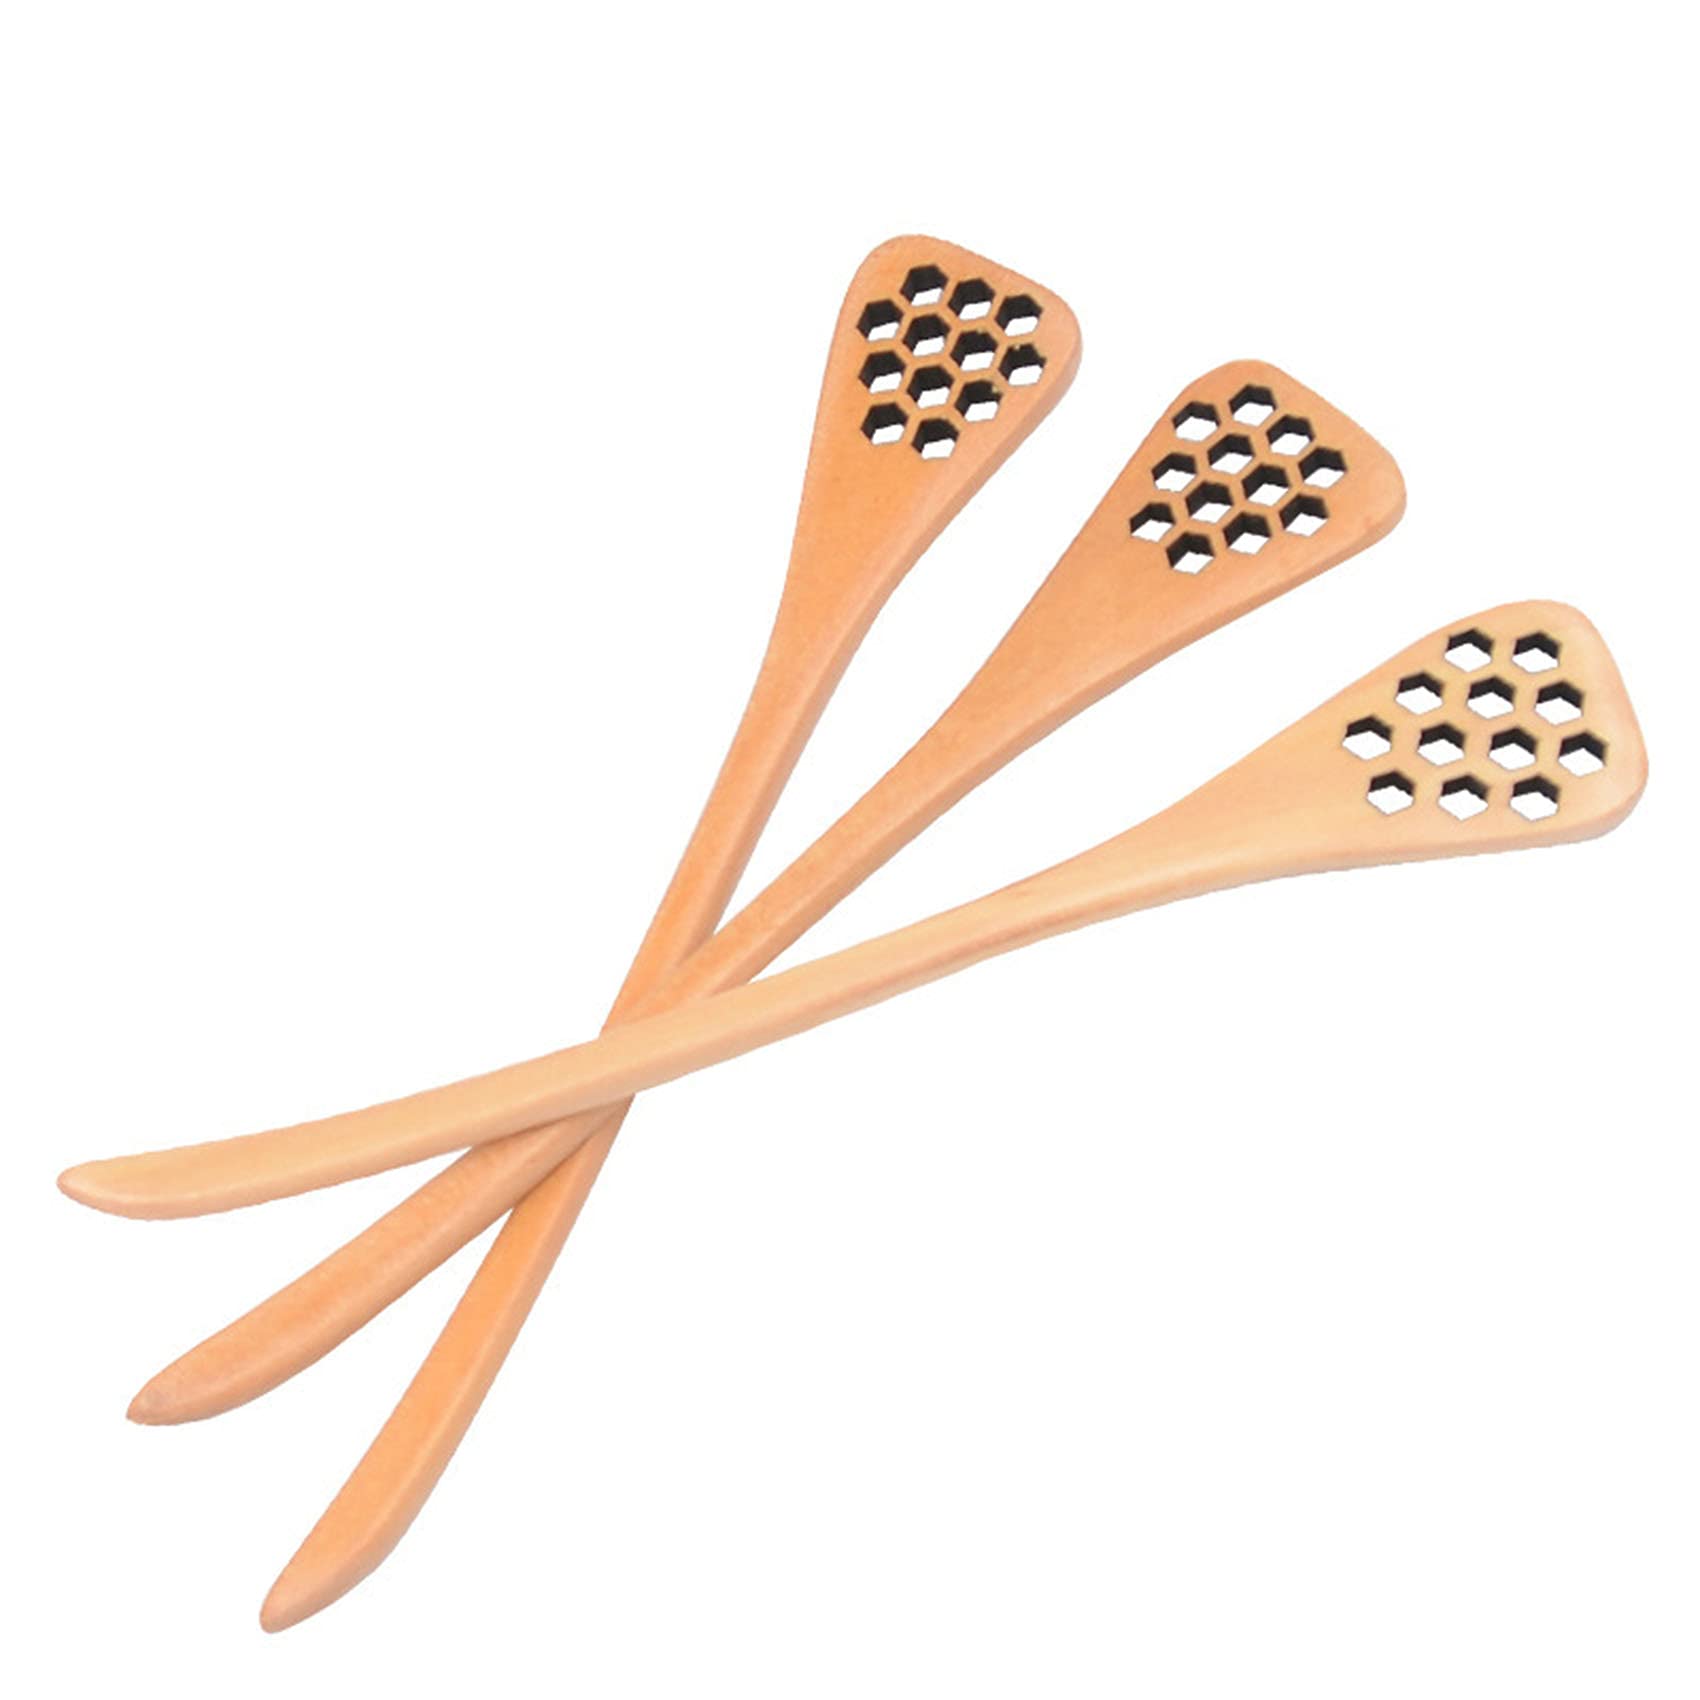 7" Wooden Honey Dipper Sticks, Honey Comb Spoons, For Handmade Honey Dispenser and Mixing Stirrer (12-Pack)